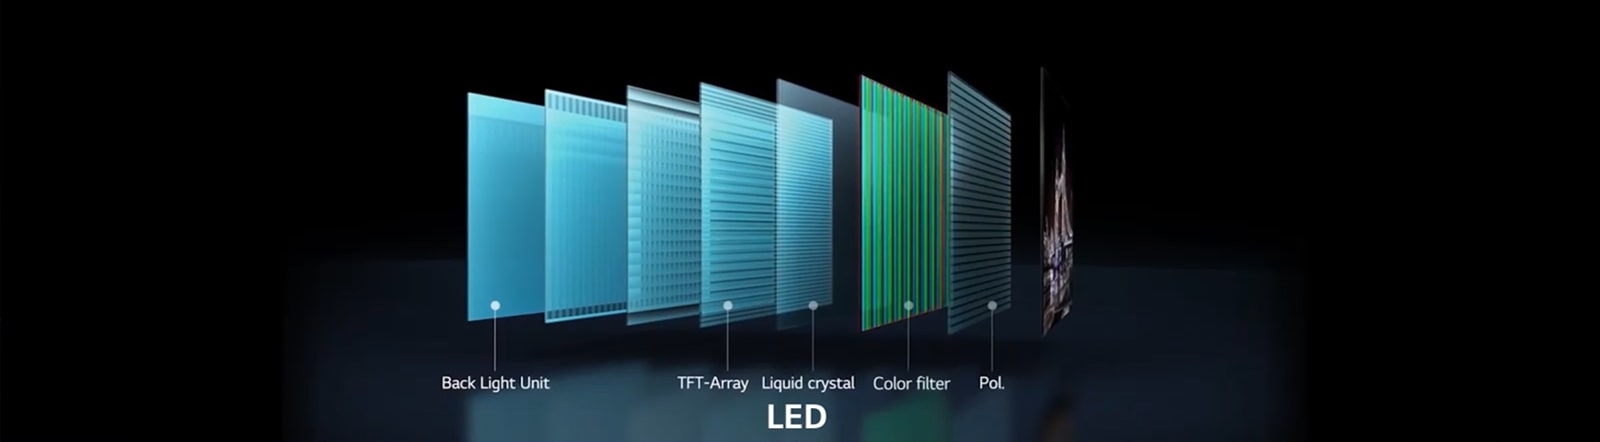 مقارنة اختلاف بنية شاشات LED التي تتطلب إضاءة خلفية وشاشات OLED الذي لا تعتمد في الأساس على هذه التقنية. (تشغيل الفيديو)